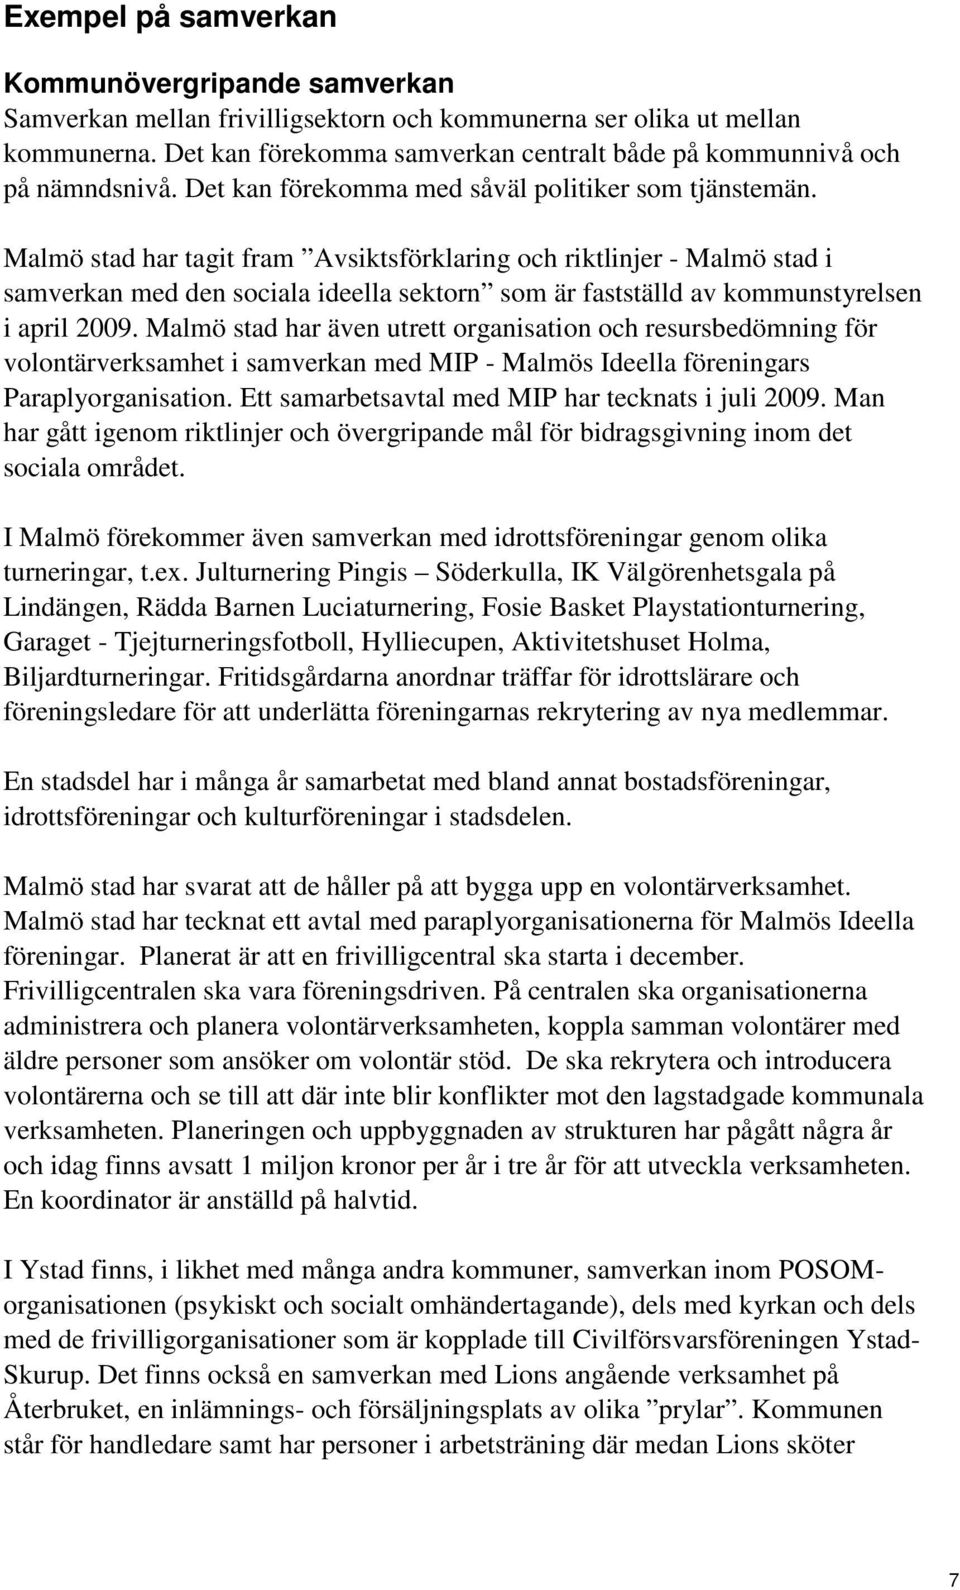 Malmö stad har tagit fram Avsiktsförklaring och riktlinjer - Malmö stad i samverkan med den sociala ideella sektorn som är fastställd av kommunstyrelsen i april 2009.